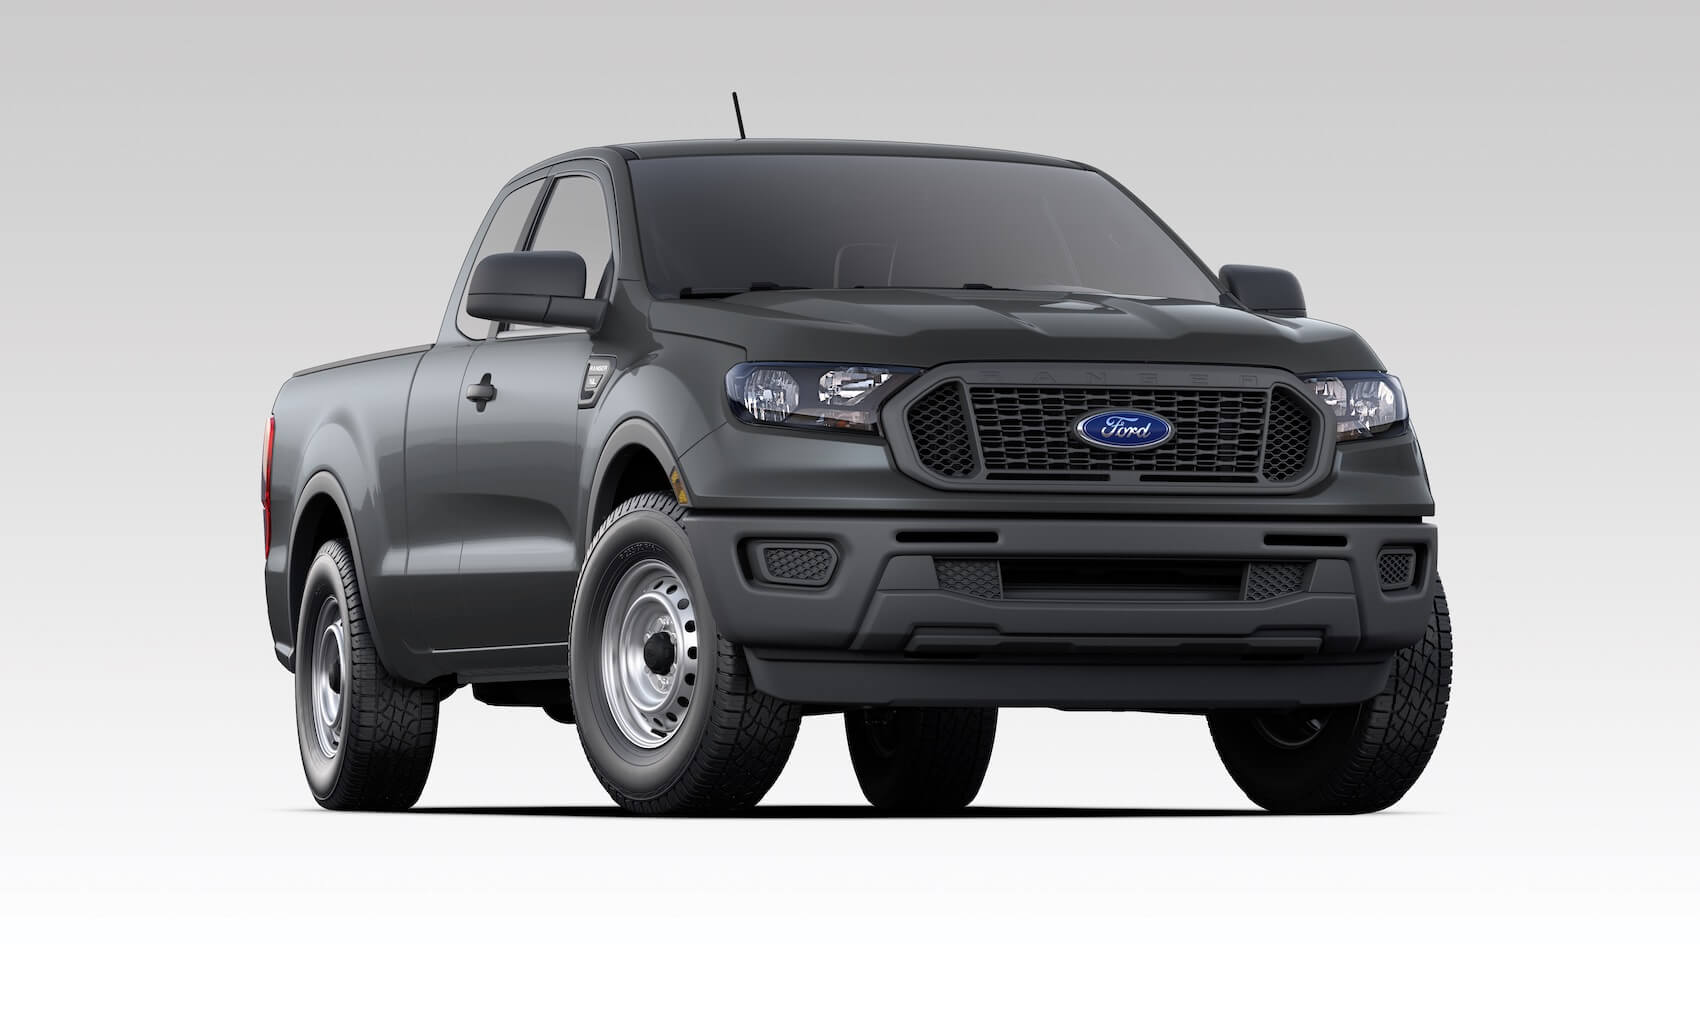 Ford Ranger Capability